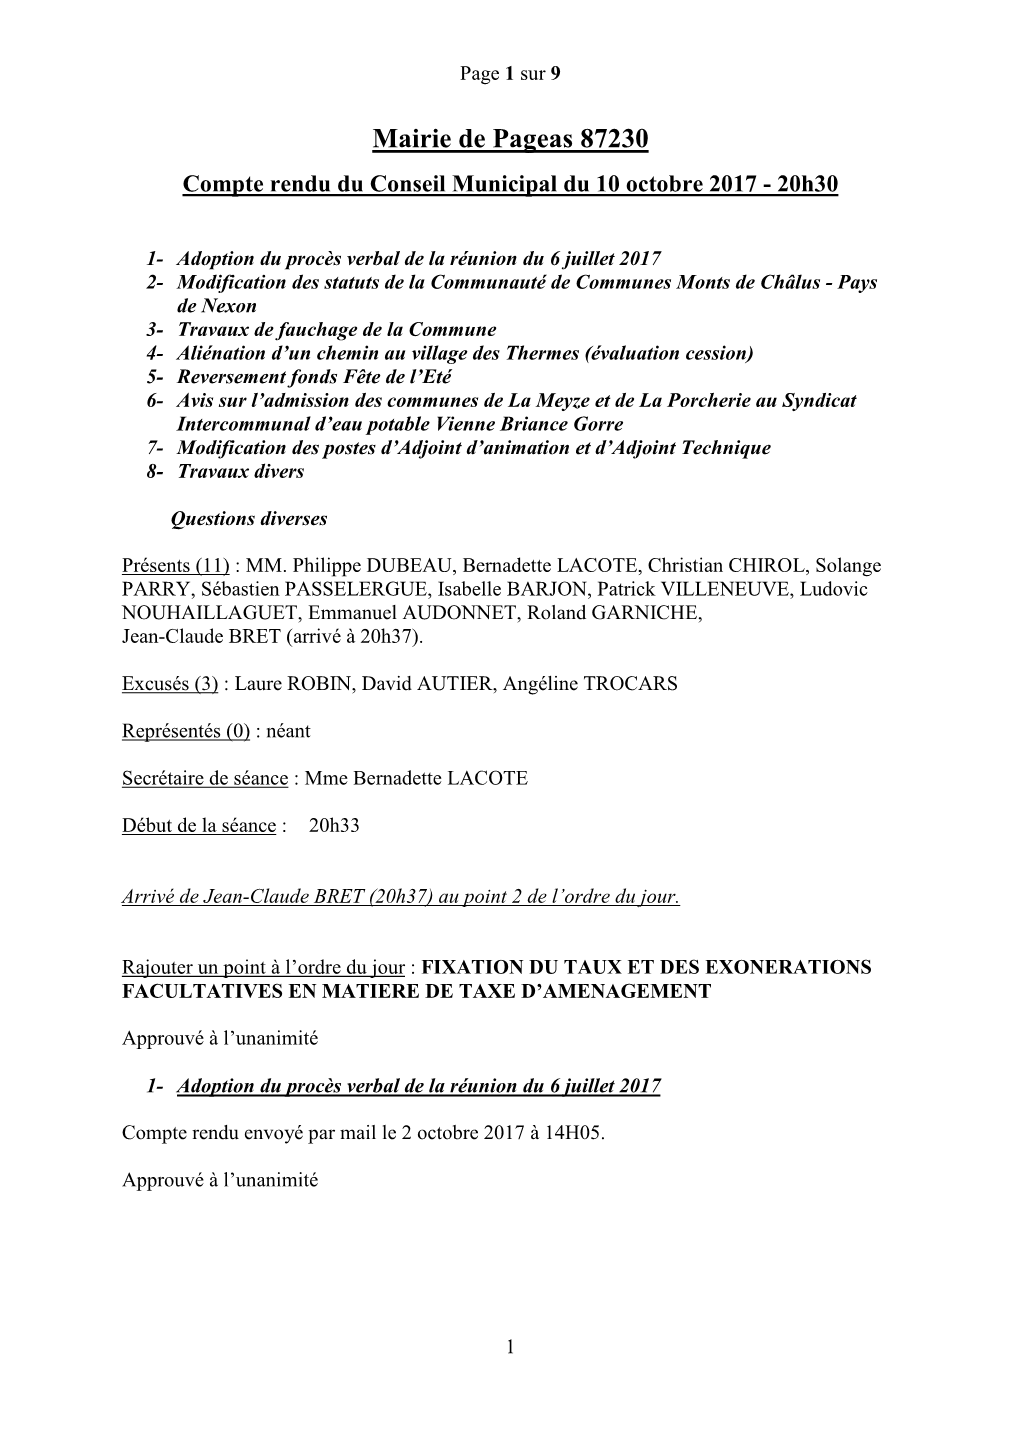 Mairie De Pageas 87230 Compte Rendu Du Conseil Municipal Du 10 Octobre 2017 - 20H30